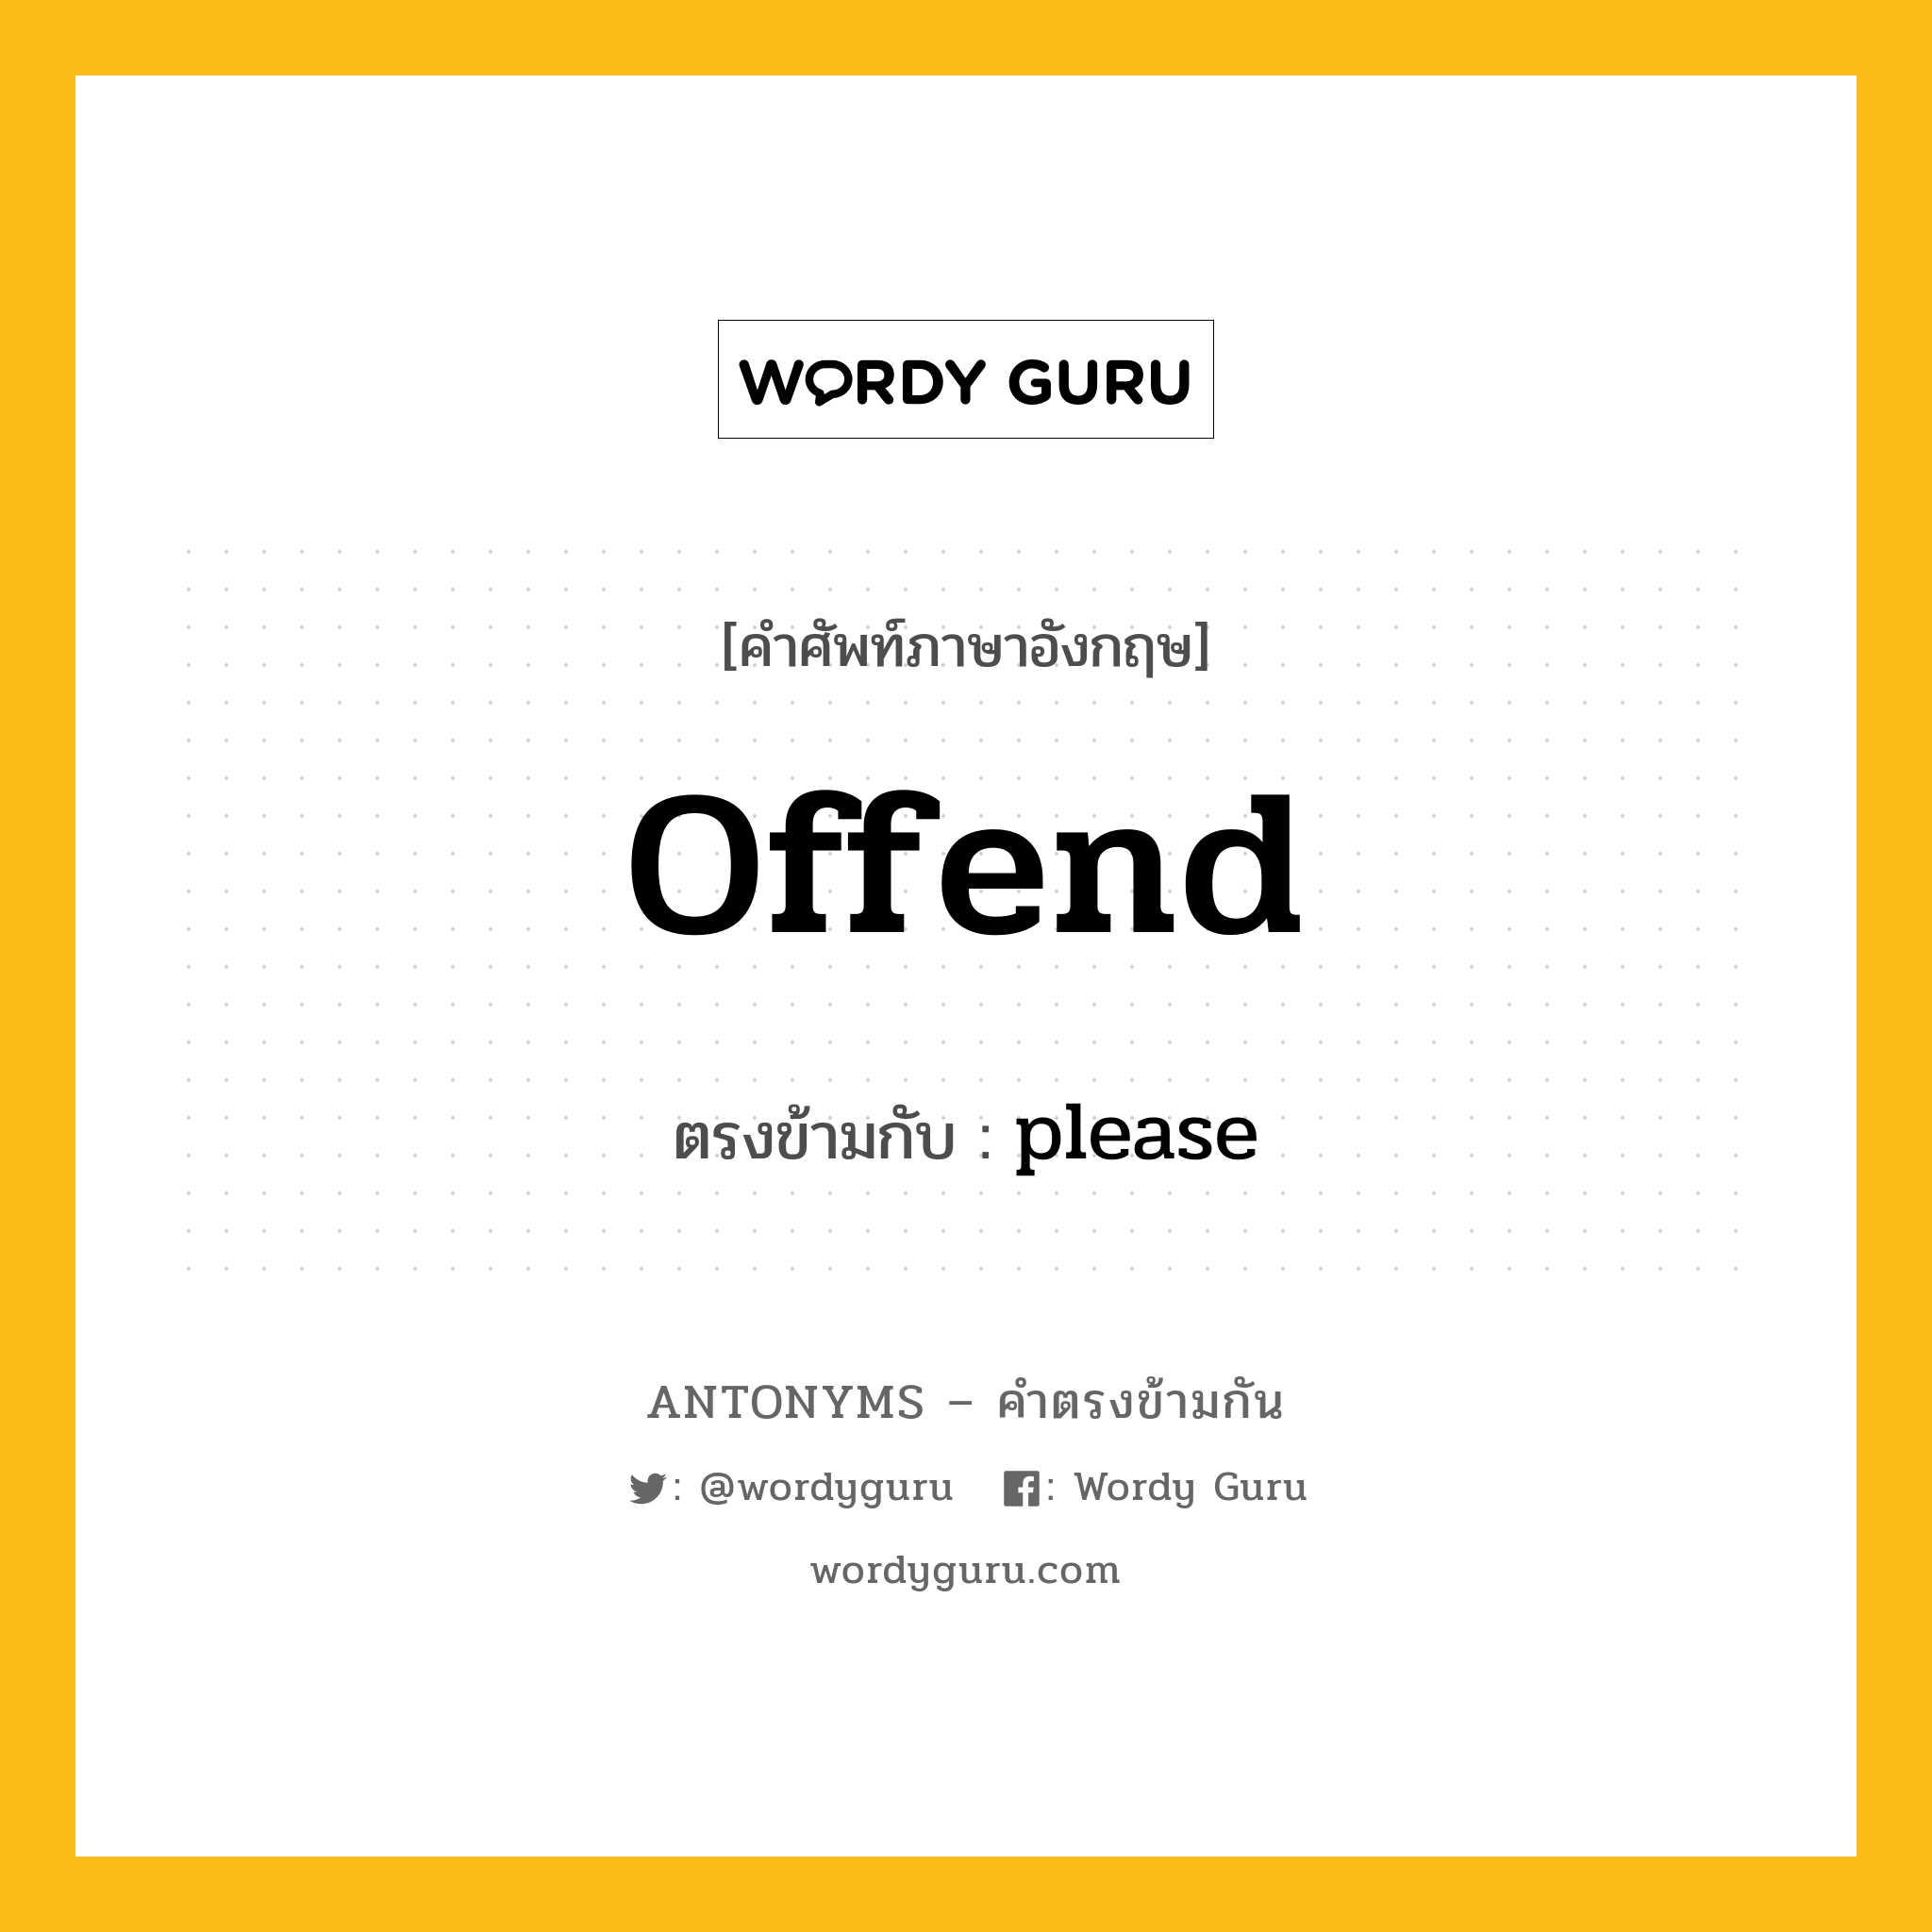 offend เป็นคำตรงข้ามกับคำไหนบ้าง?, คำศัพท์ภาษาอังกฤษ offend ตรงข้ามกับ please หมวด please